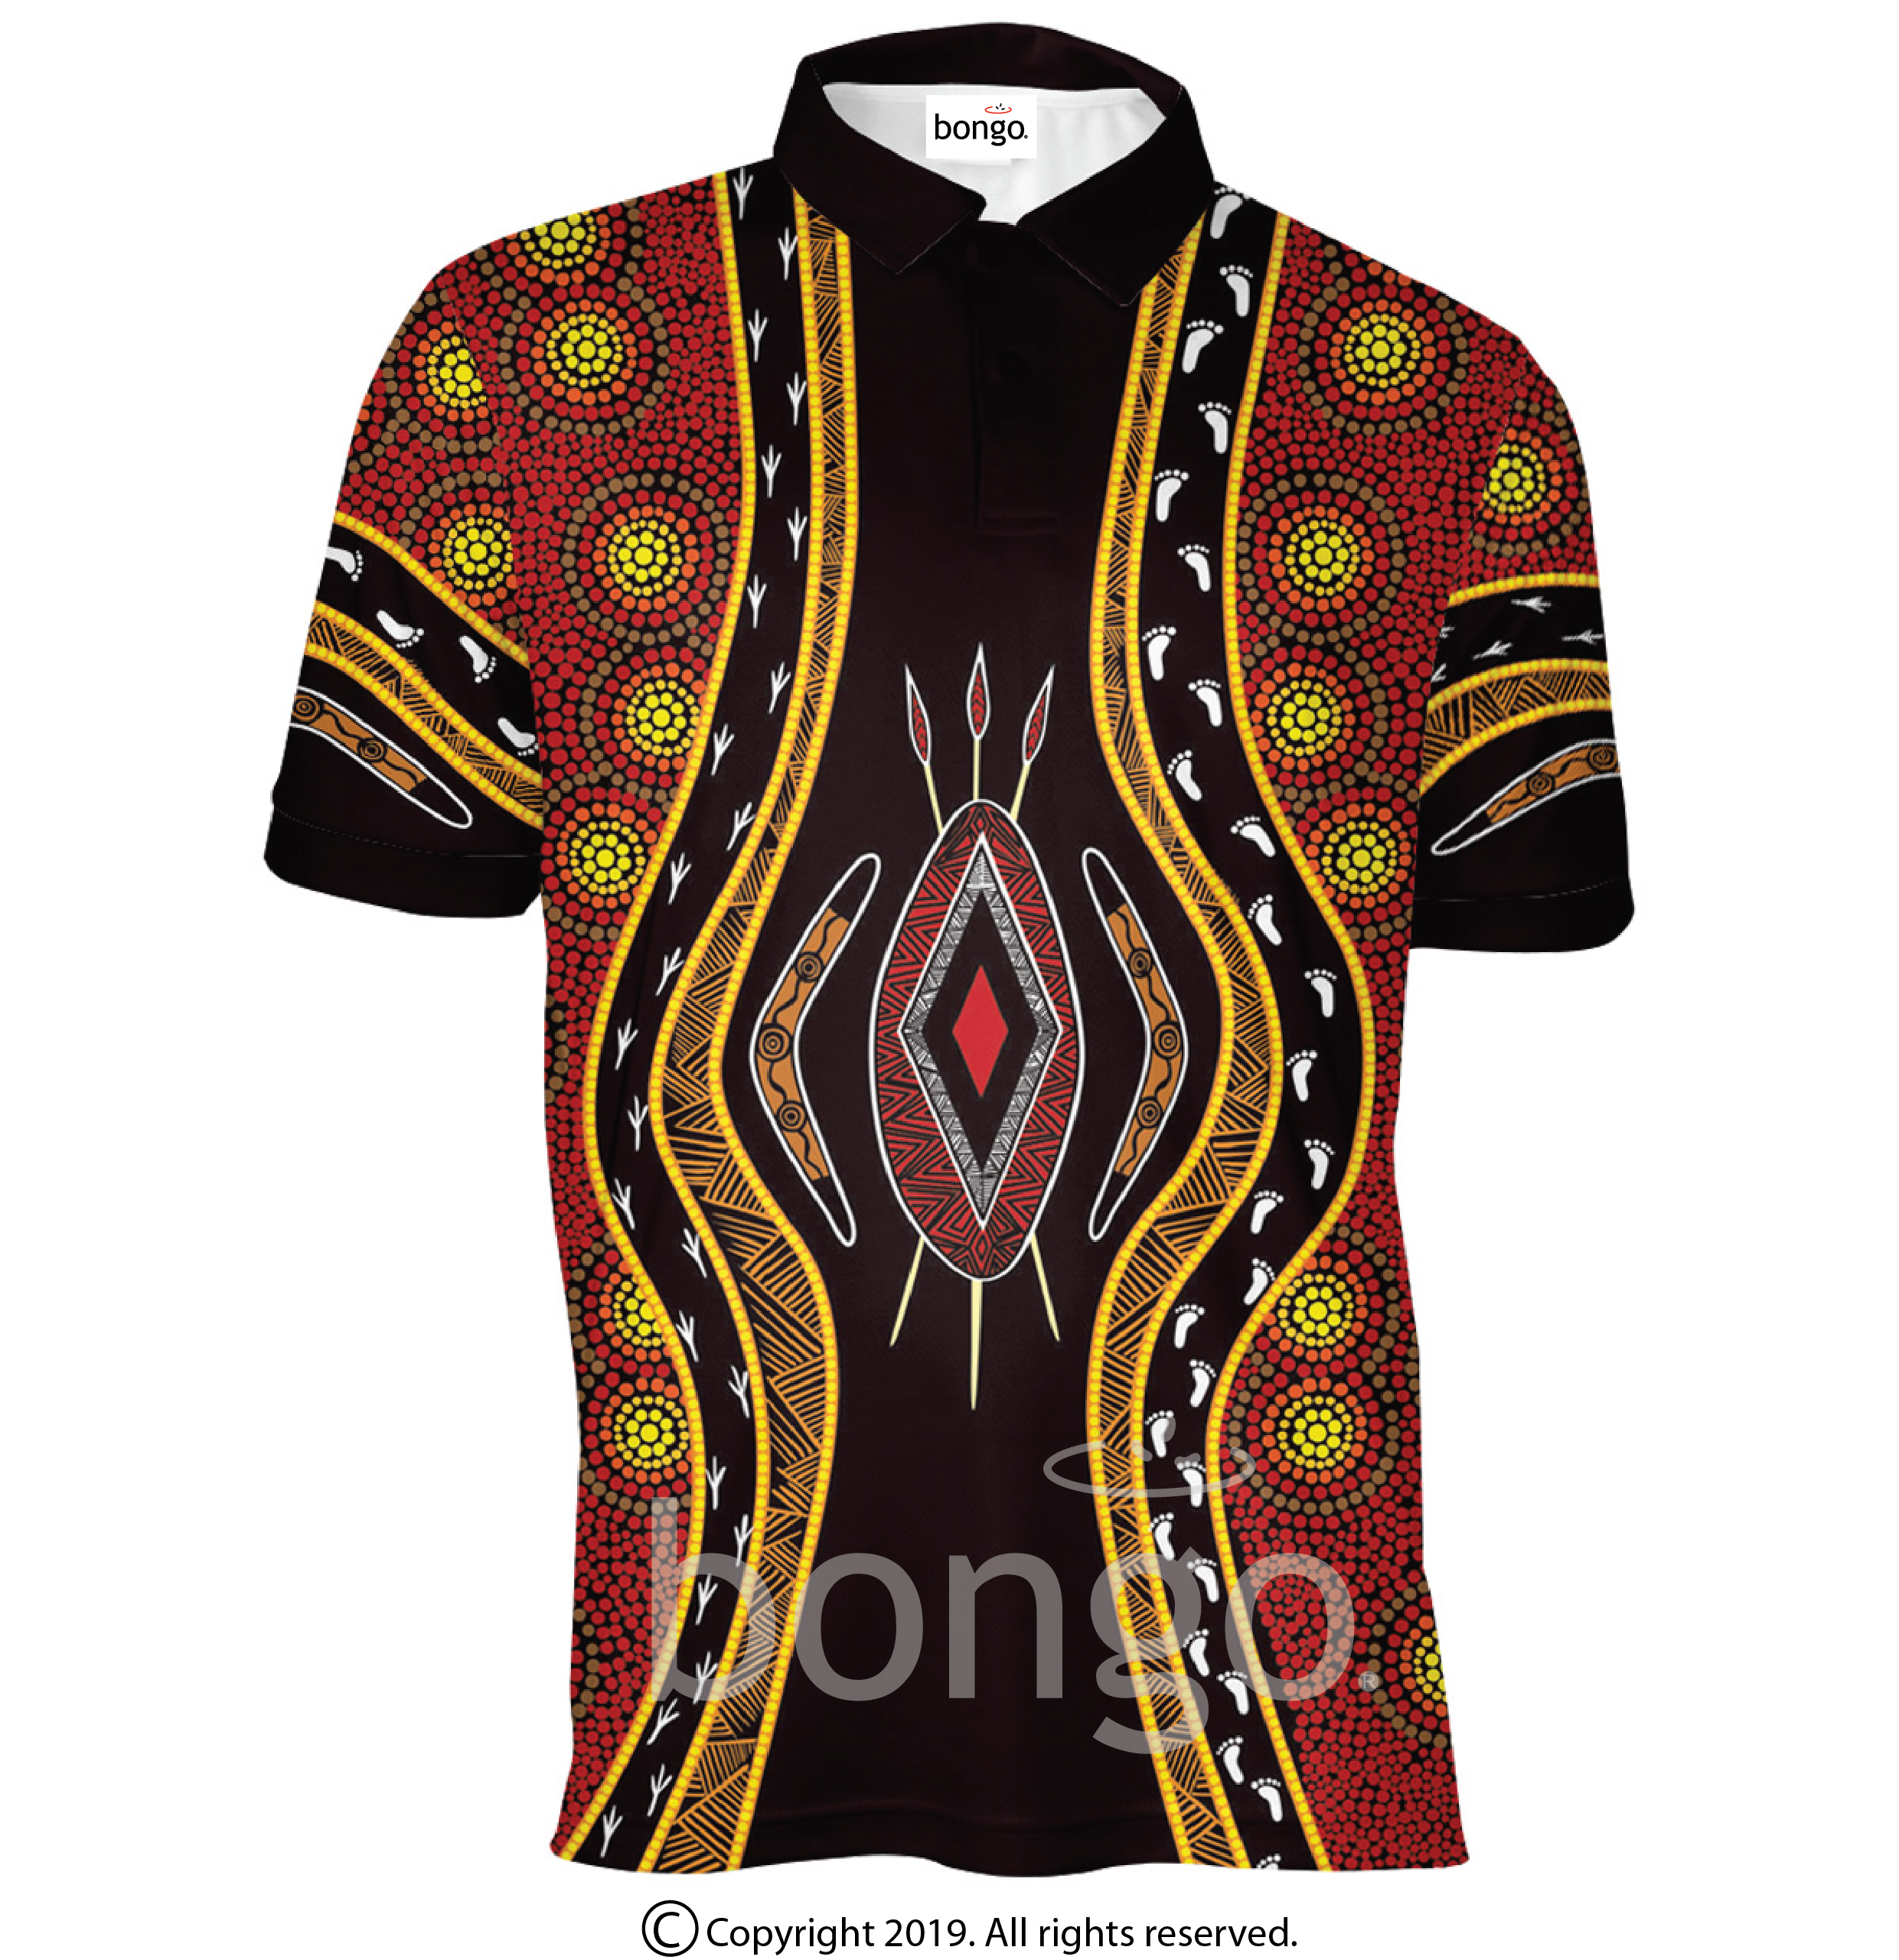 Promotional Indigenous Bussamarai Polo Shirt - Bongo